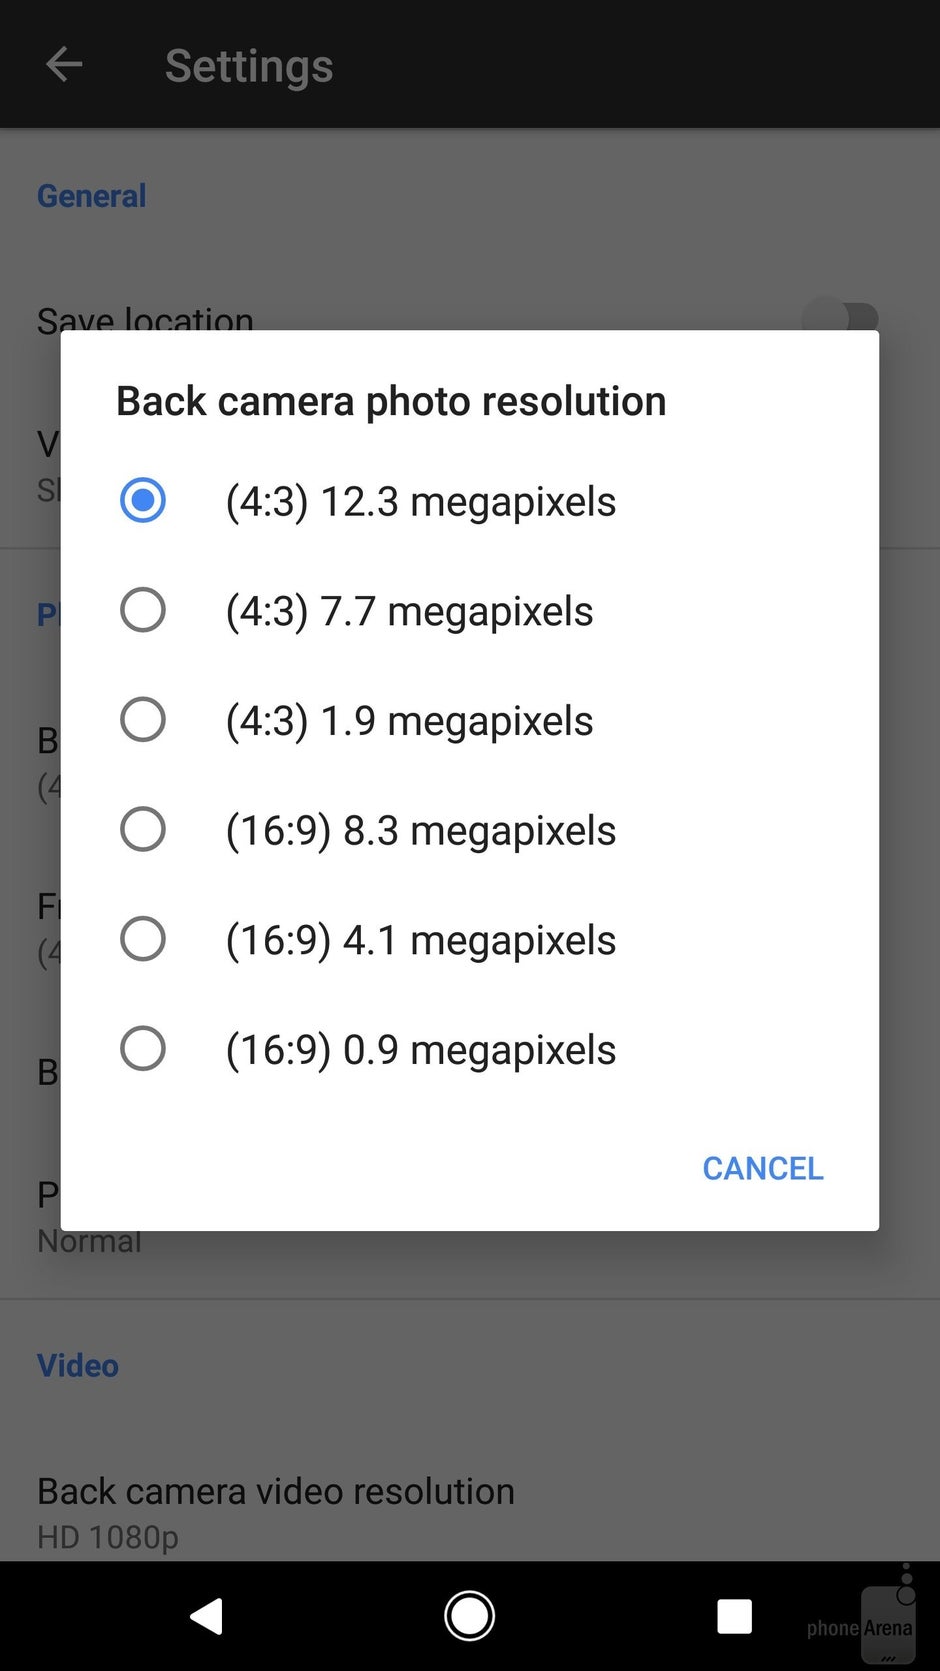 Interfaccia della fotocamera del Pixel XL - Google Pixel XL vs LG V20